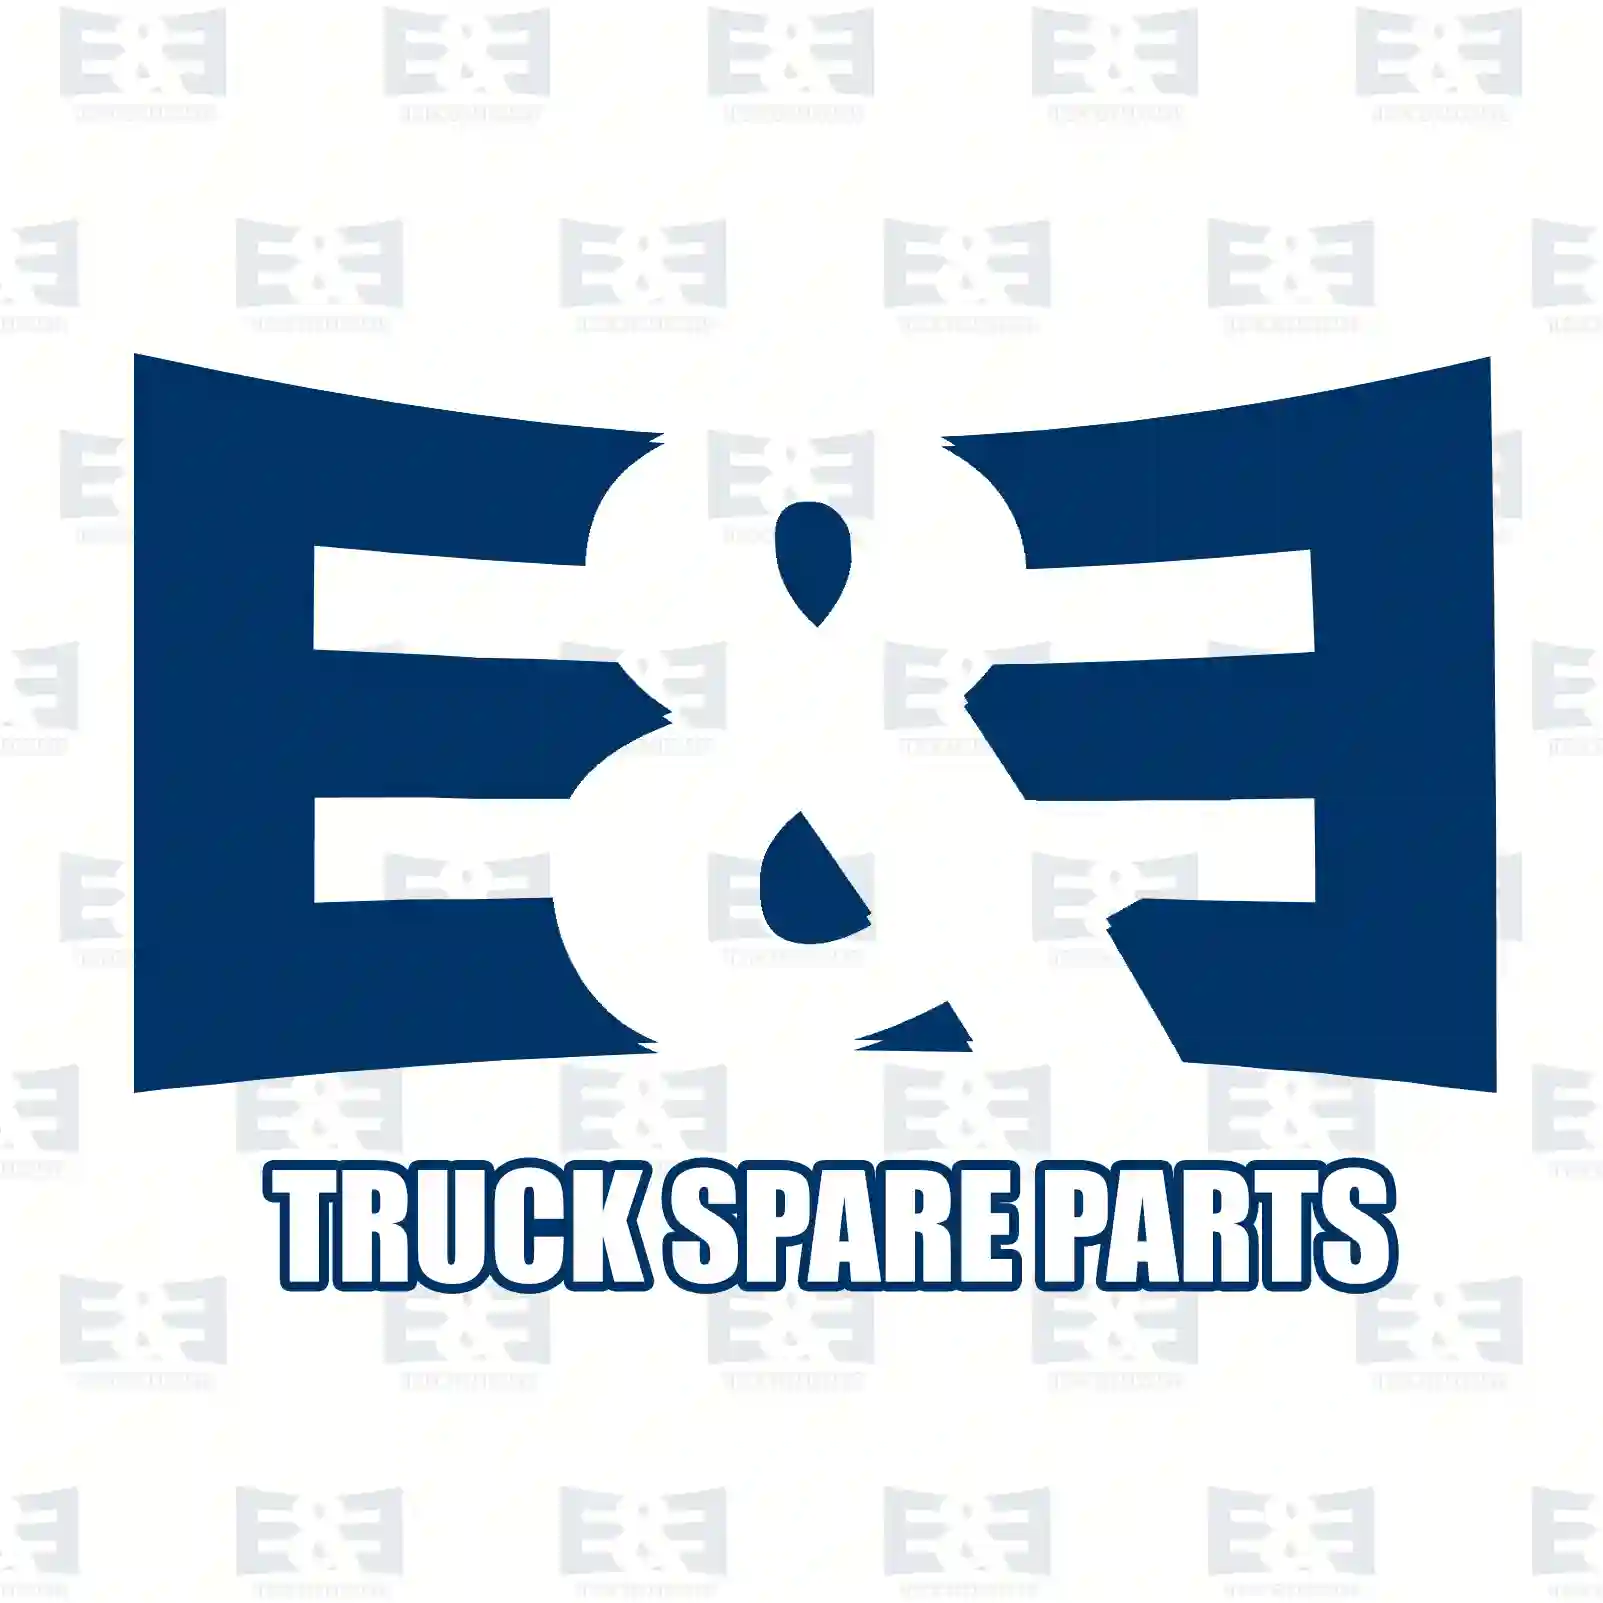 O-ring, 2E2286182, 6569302985 ||  2E2286182 E&E Truck Spare Parts | Truck Spare Parts, Auotomotive Spare Parts O-ring, 2E2286182, 6569302985 ||  2E2286182 E&E Truck Spare Parts | Truck Spare Parts, Auotomotive Spare Parts